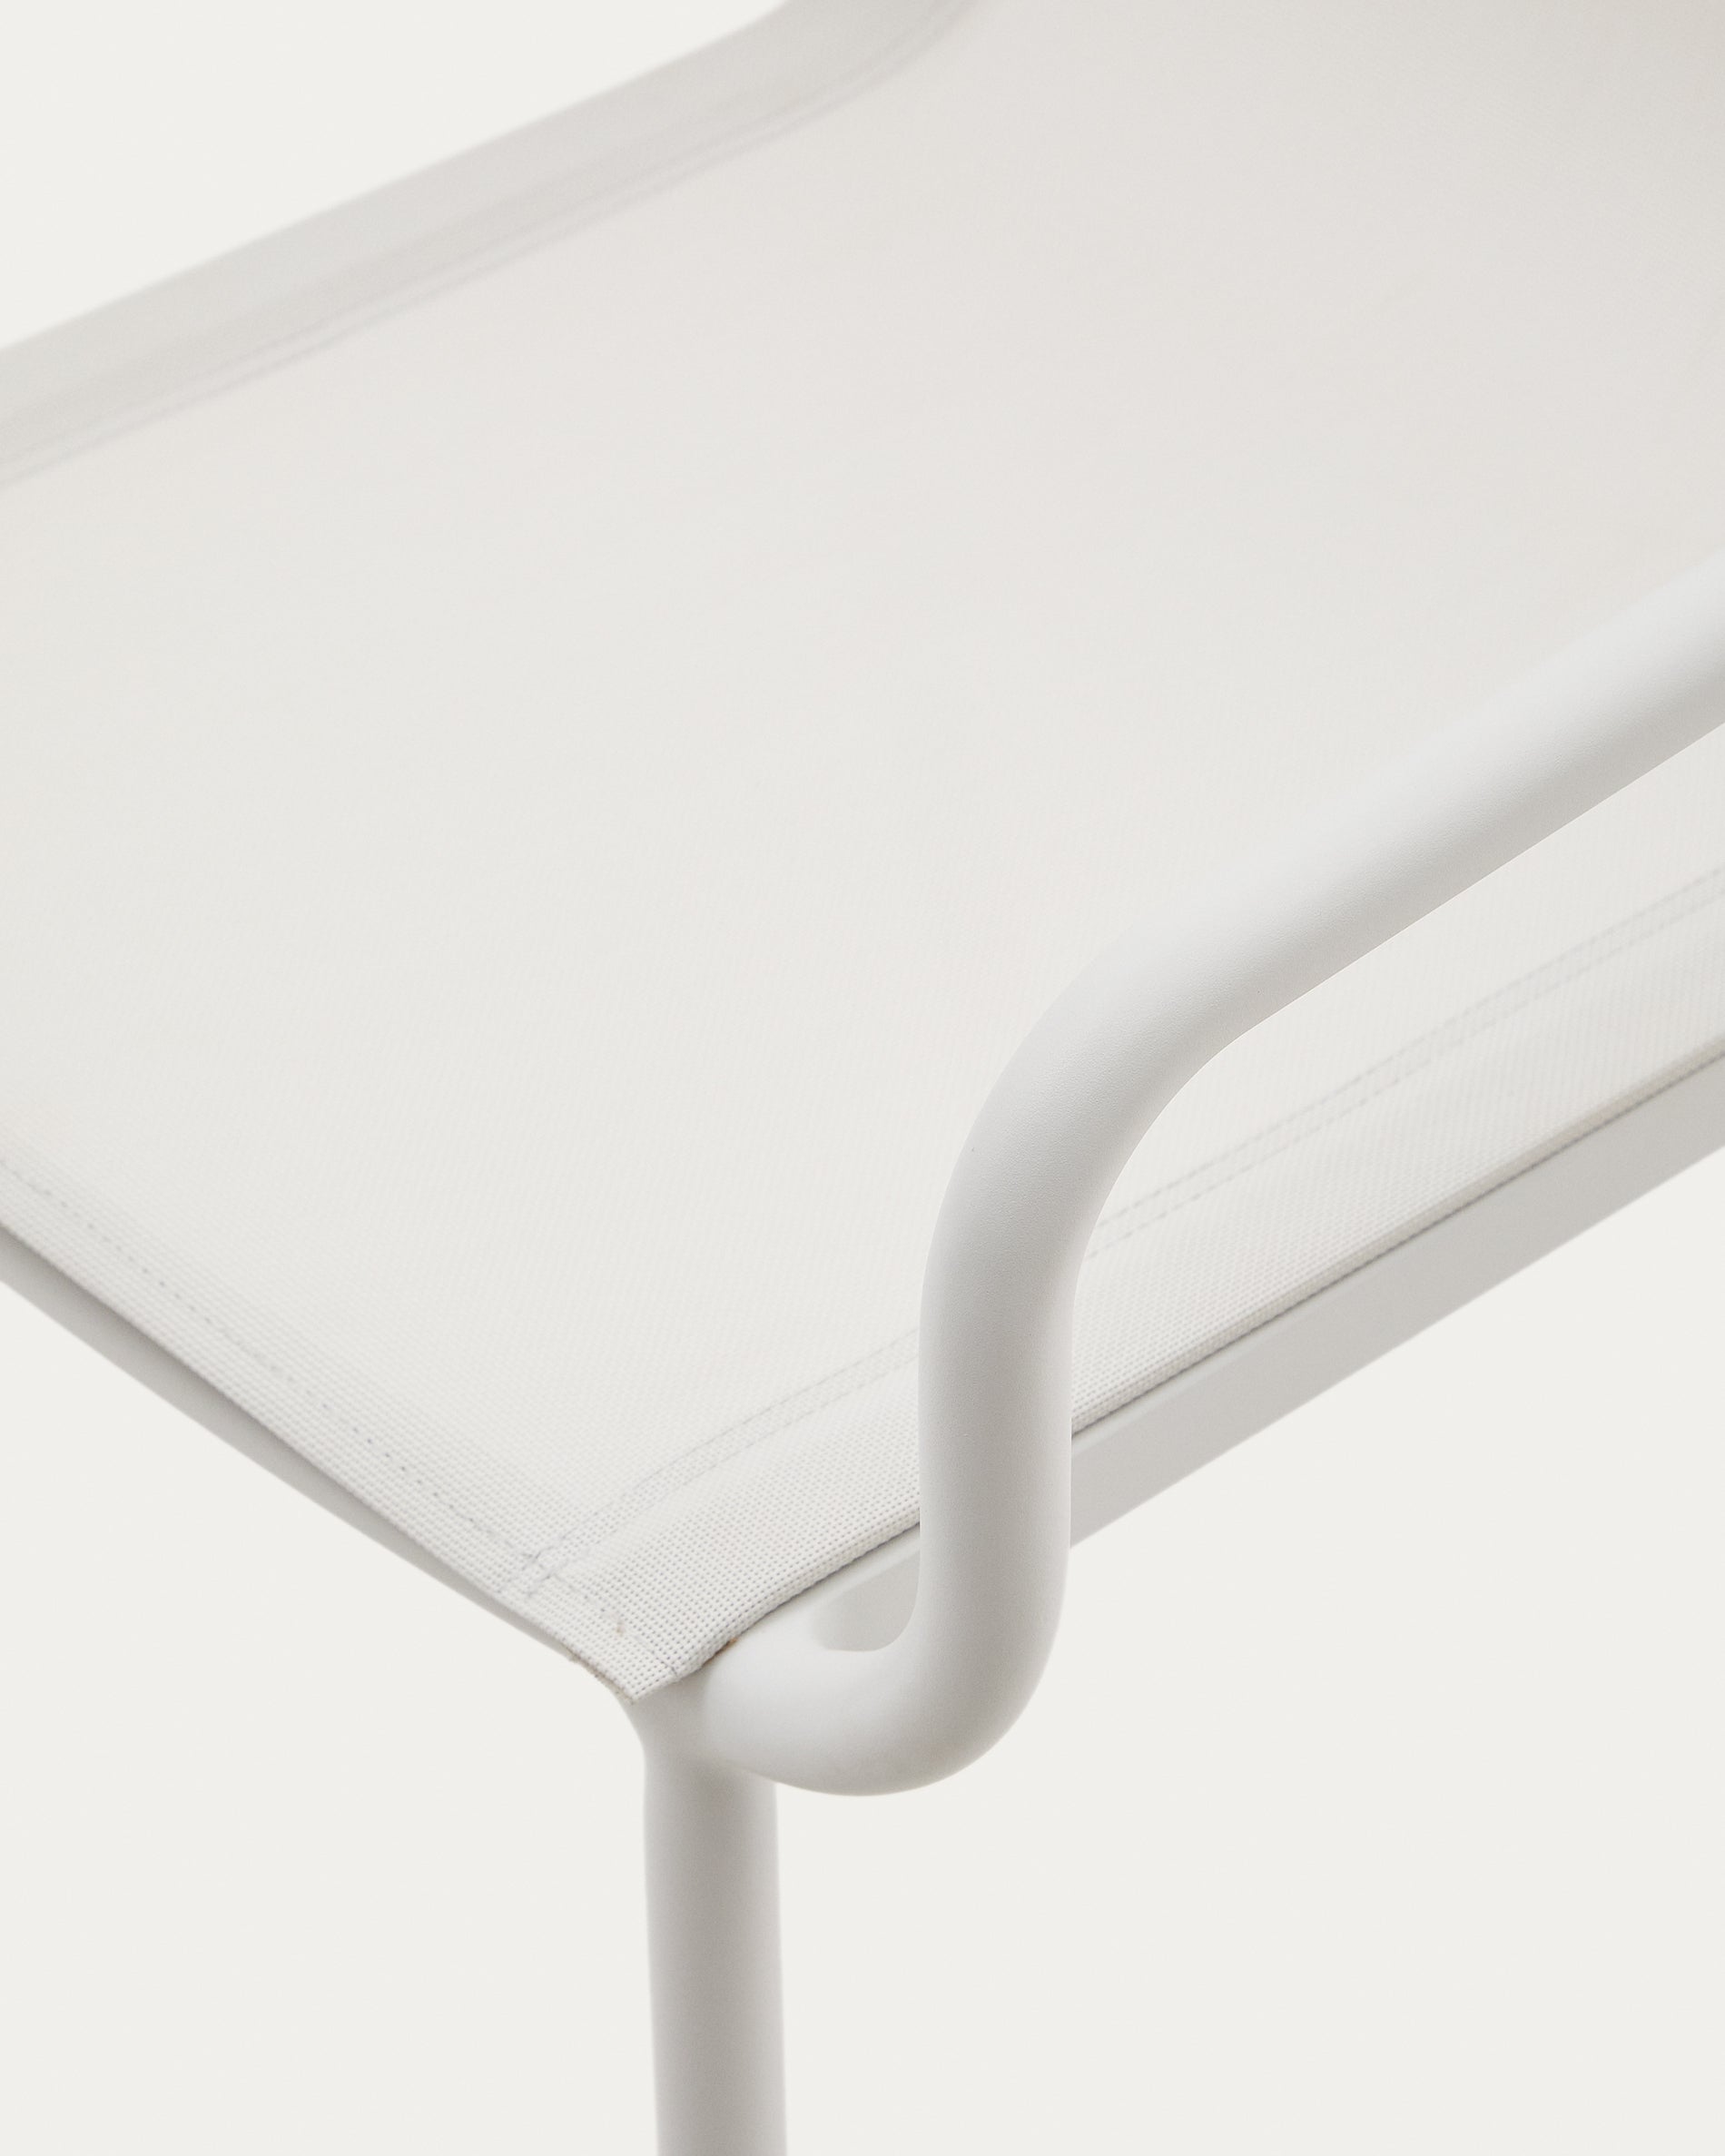 Galdana összecsukható kültéri szék alumíniumból, fehérre festett kivitelben